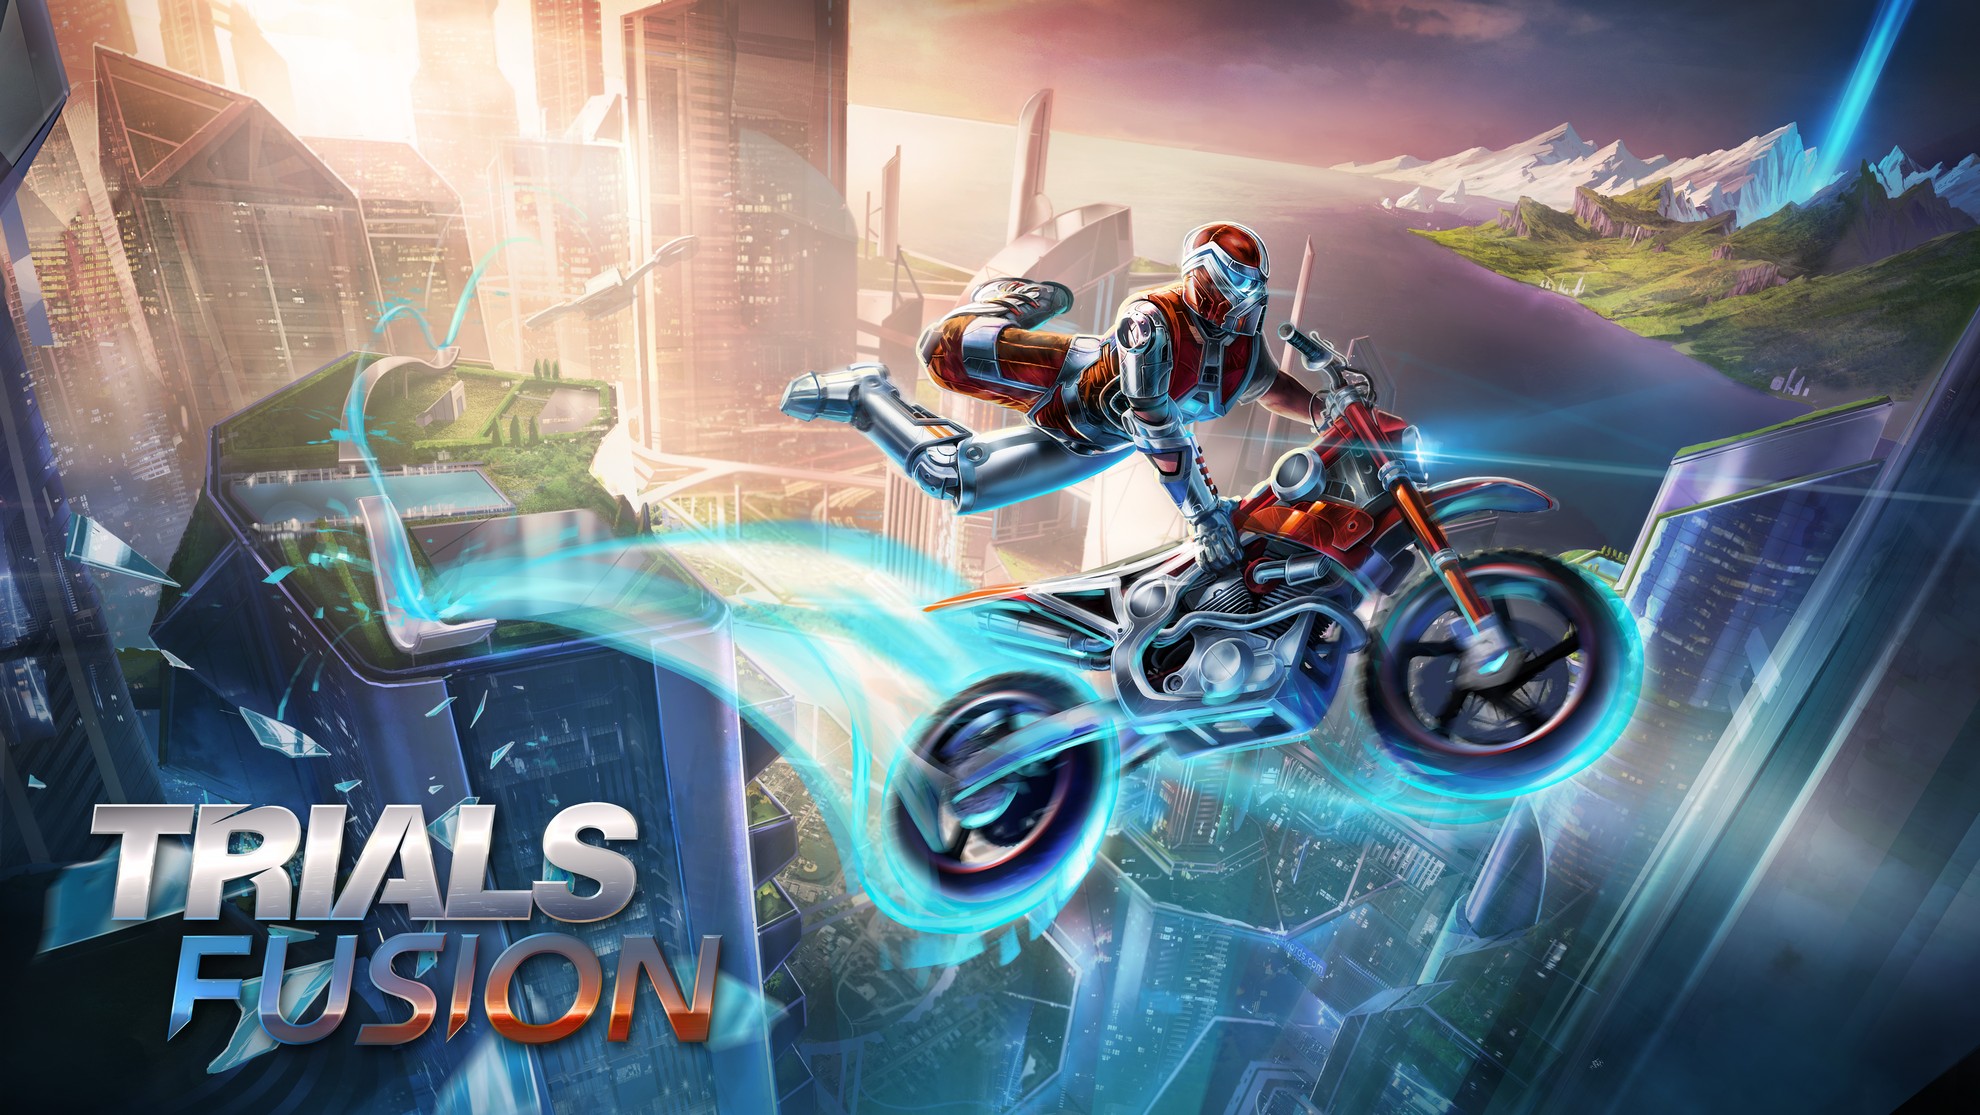 Immagine di presentazione del gioco Trials Fusion